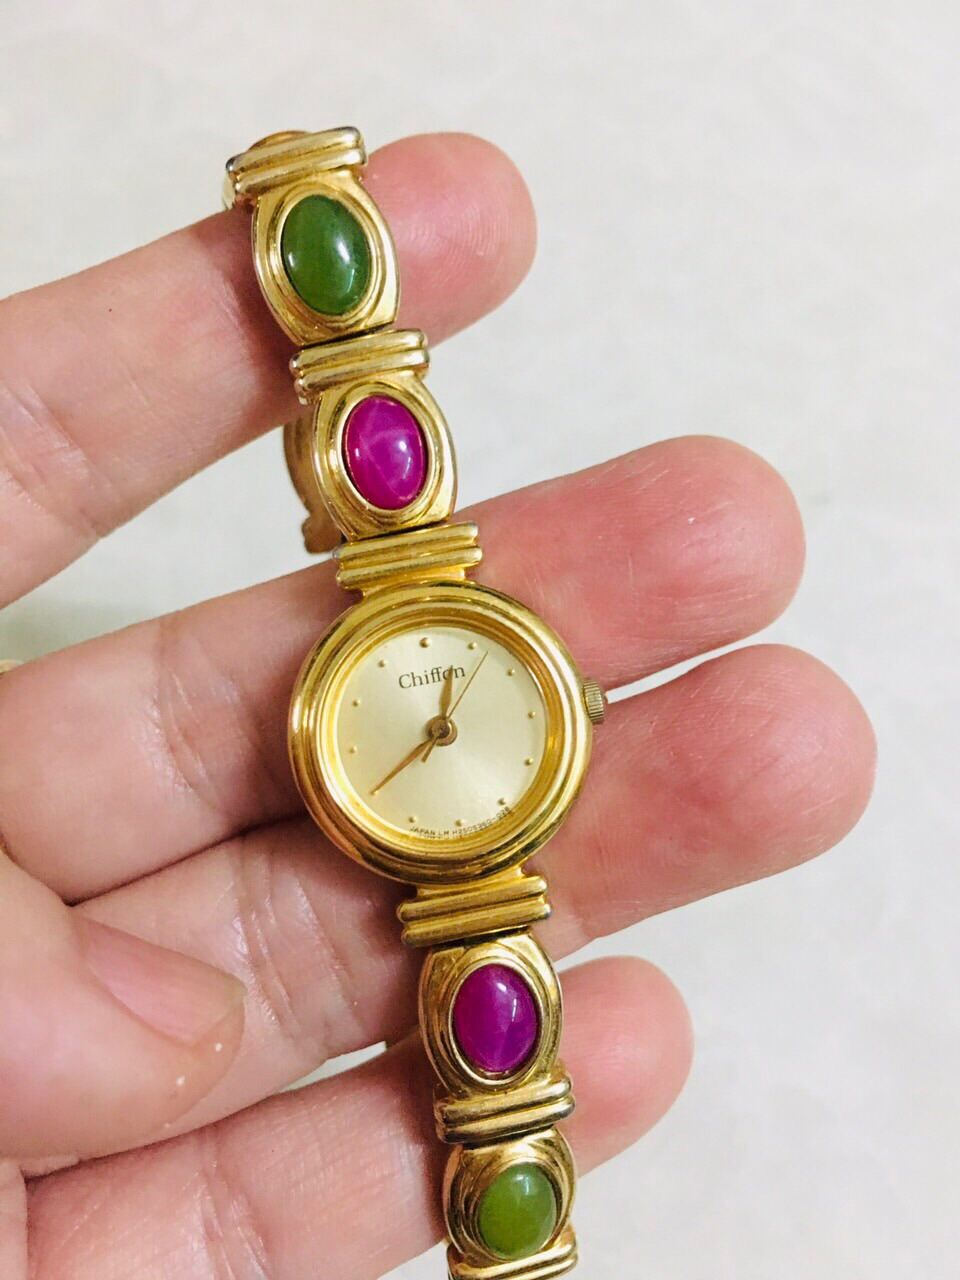 Đồng hồ Chiffon của Orient Nhật dáng lắc vàng rất đẹp thumbnail